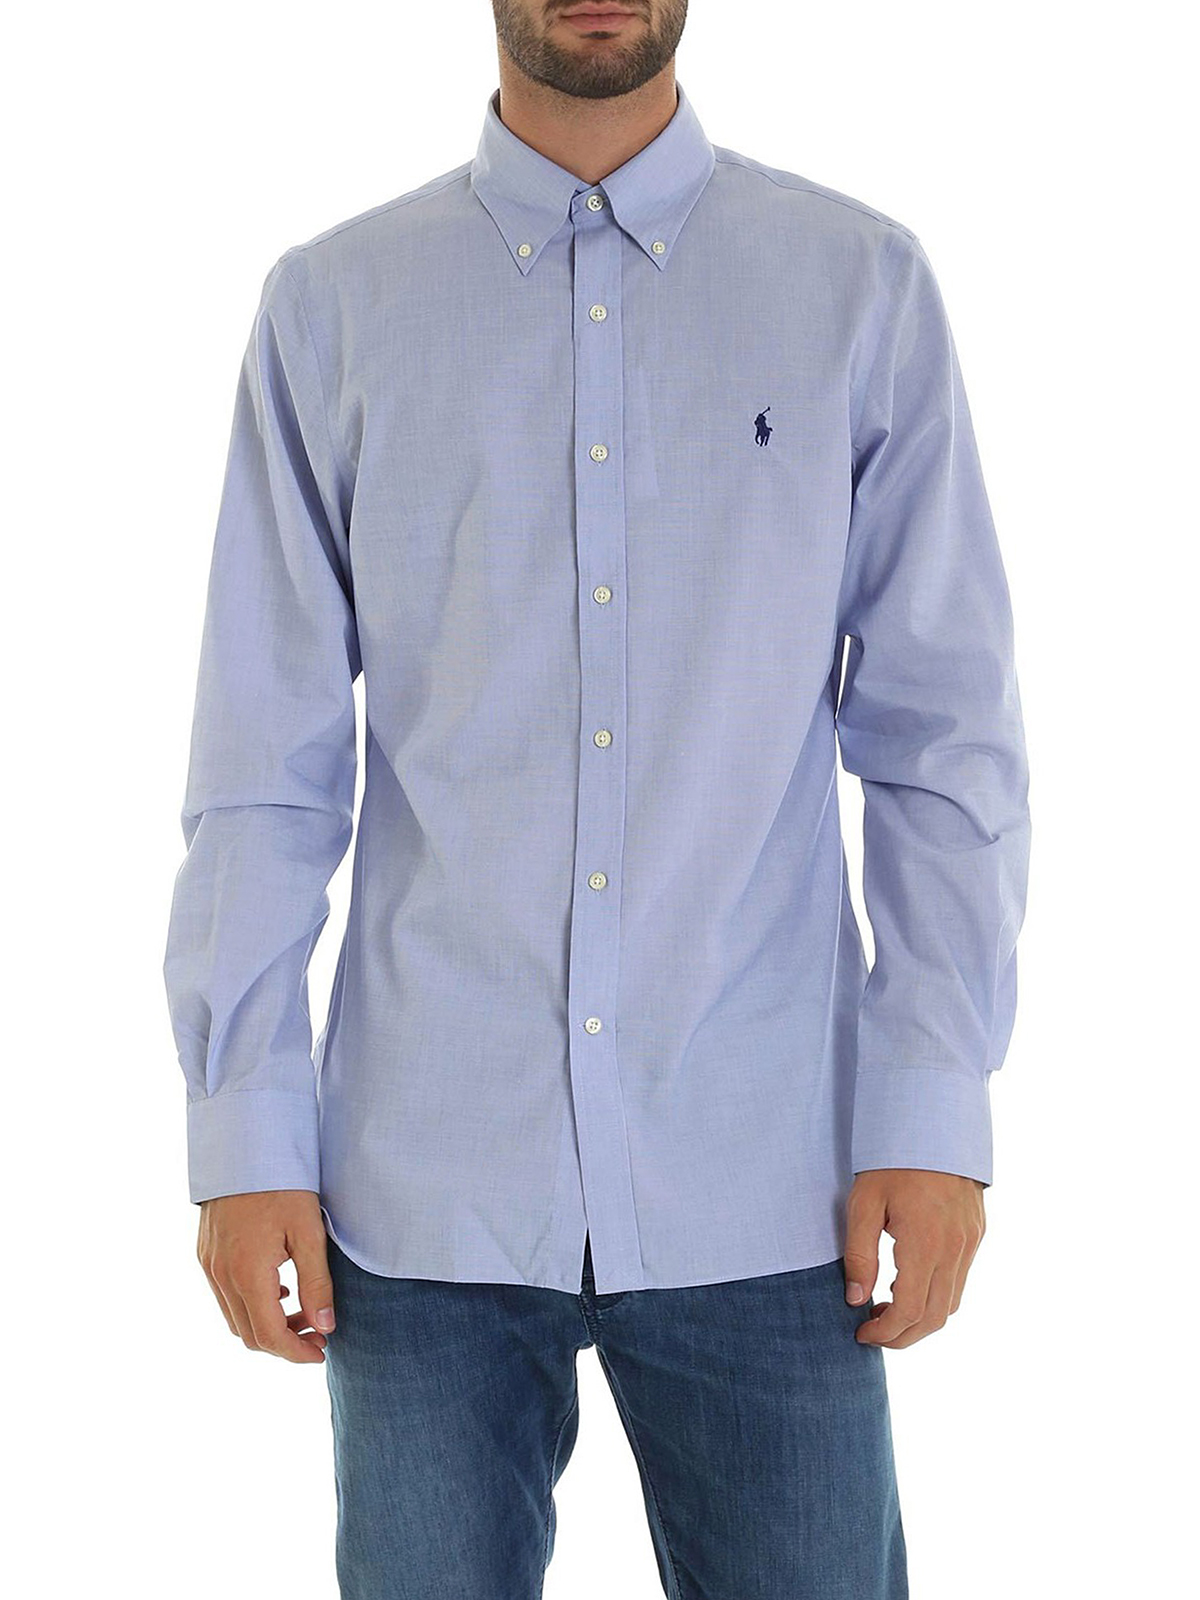 Shirts Polo Ralph Lauren - Light blue button down shirt - 712722192001